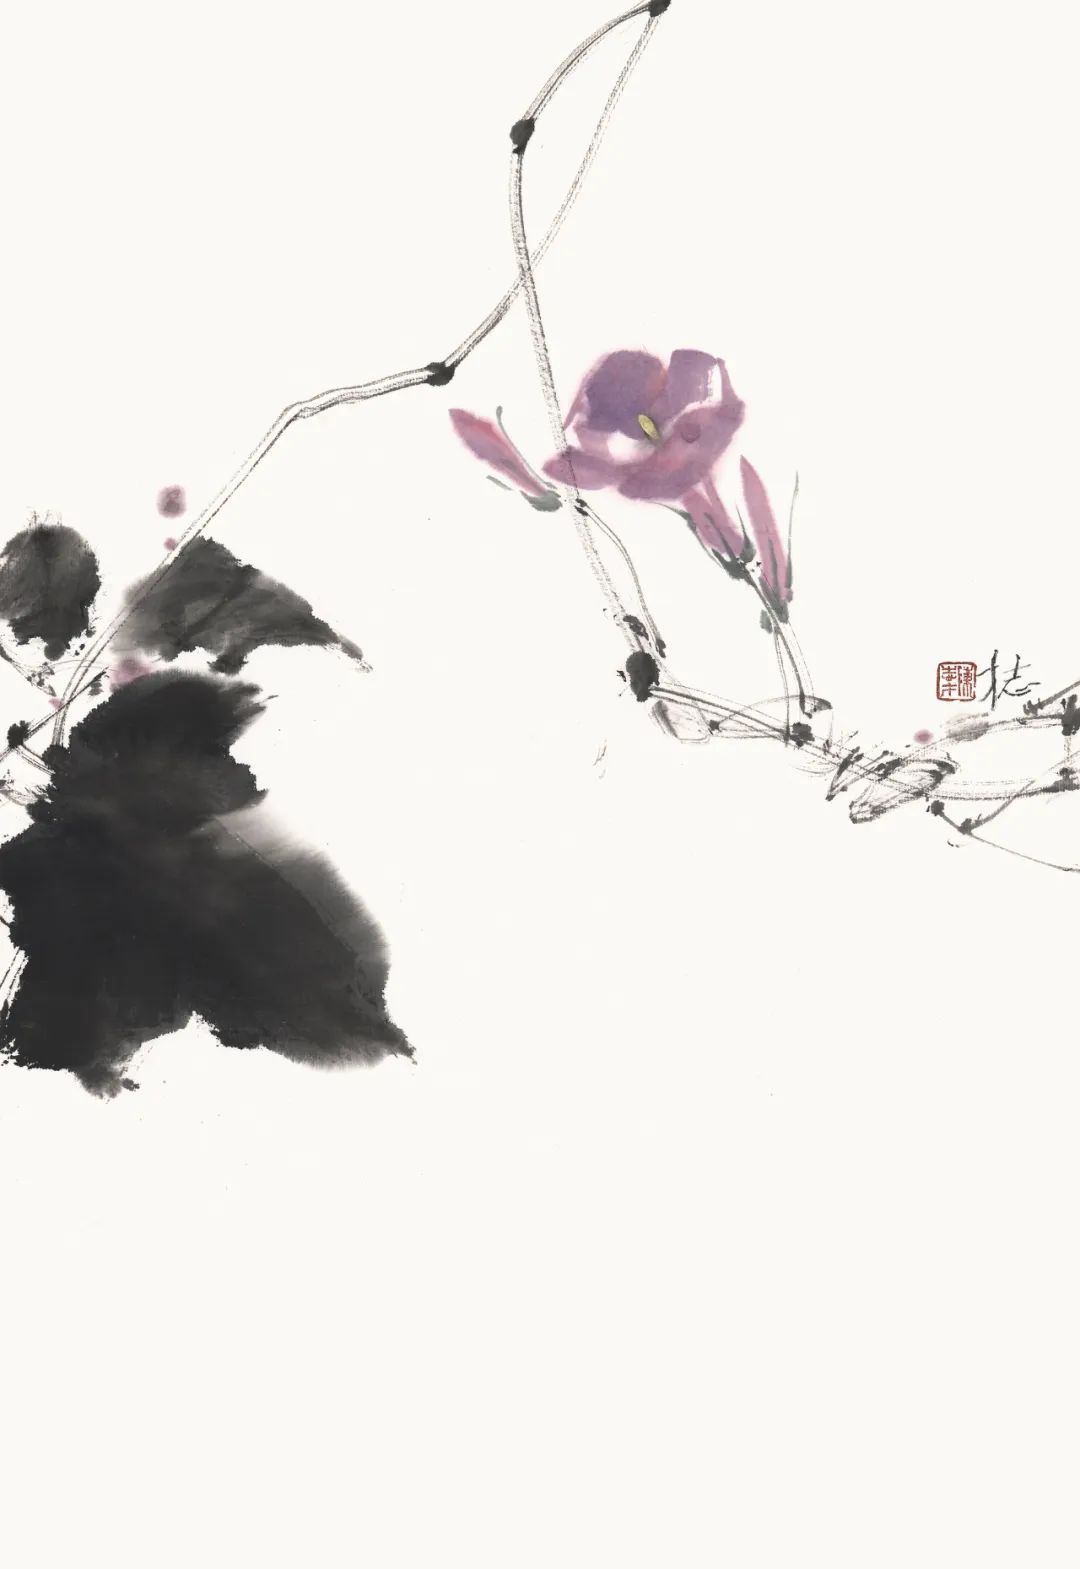 “墨随心志——陈志才作品展”将于3月16日开幕